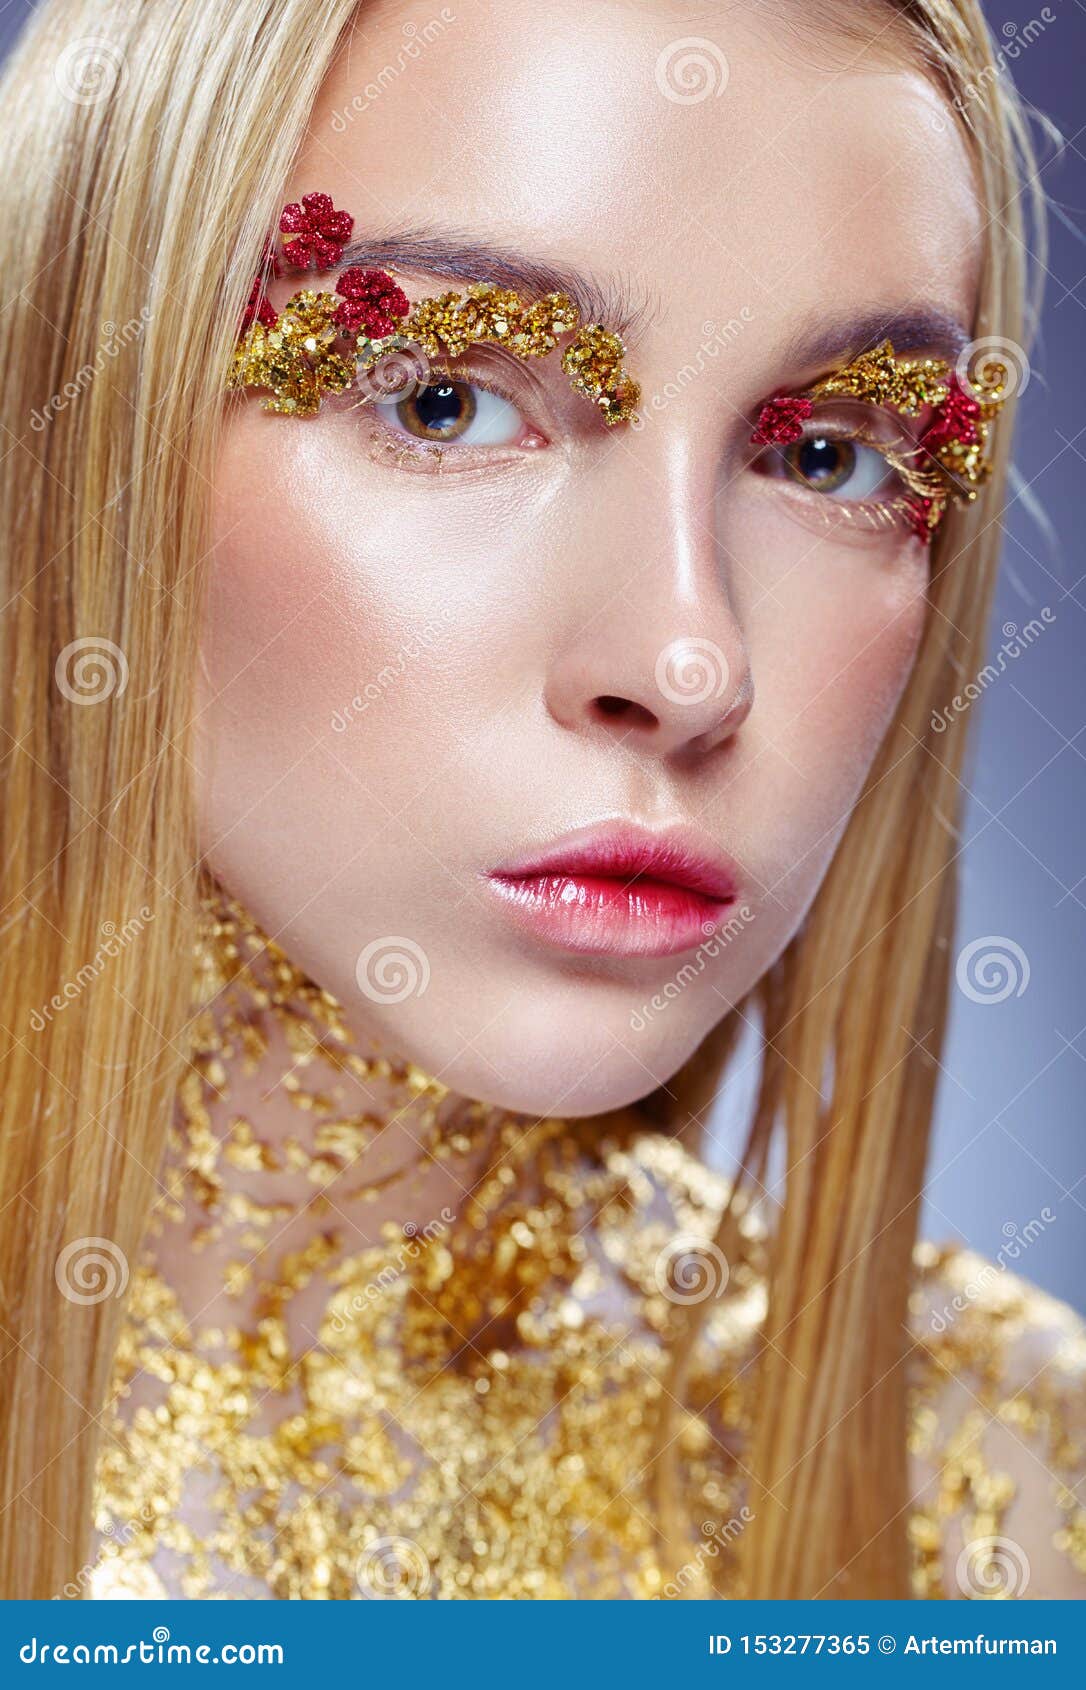 computer Overtekenen Interactie Gouden make-up stock afbeelding. Image of helder, lippen - 153277365